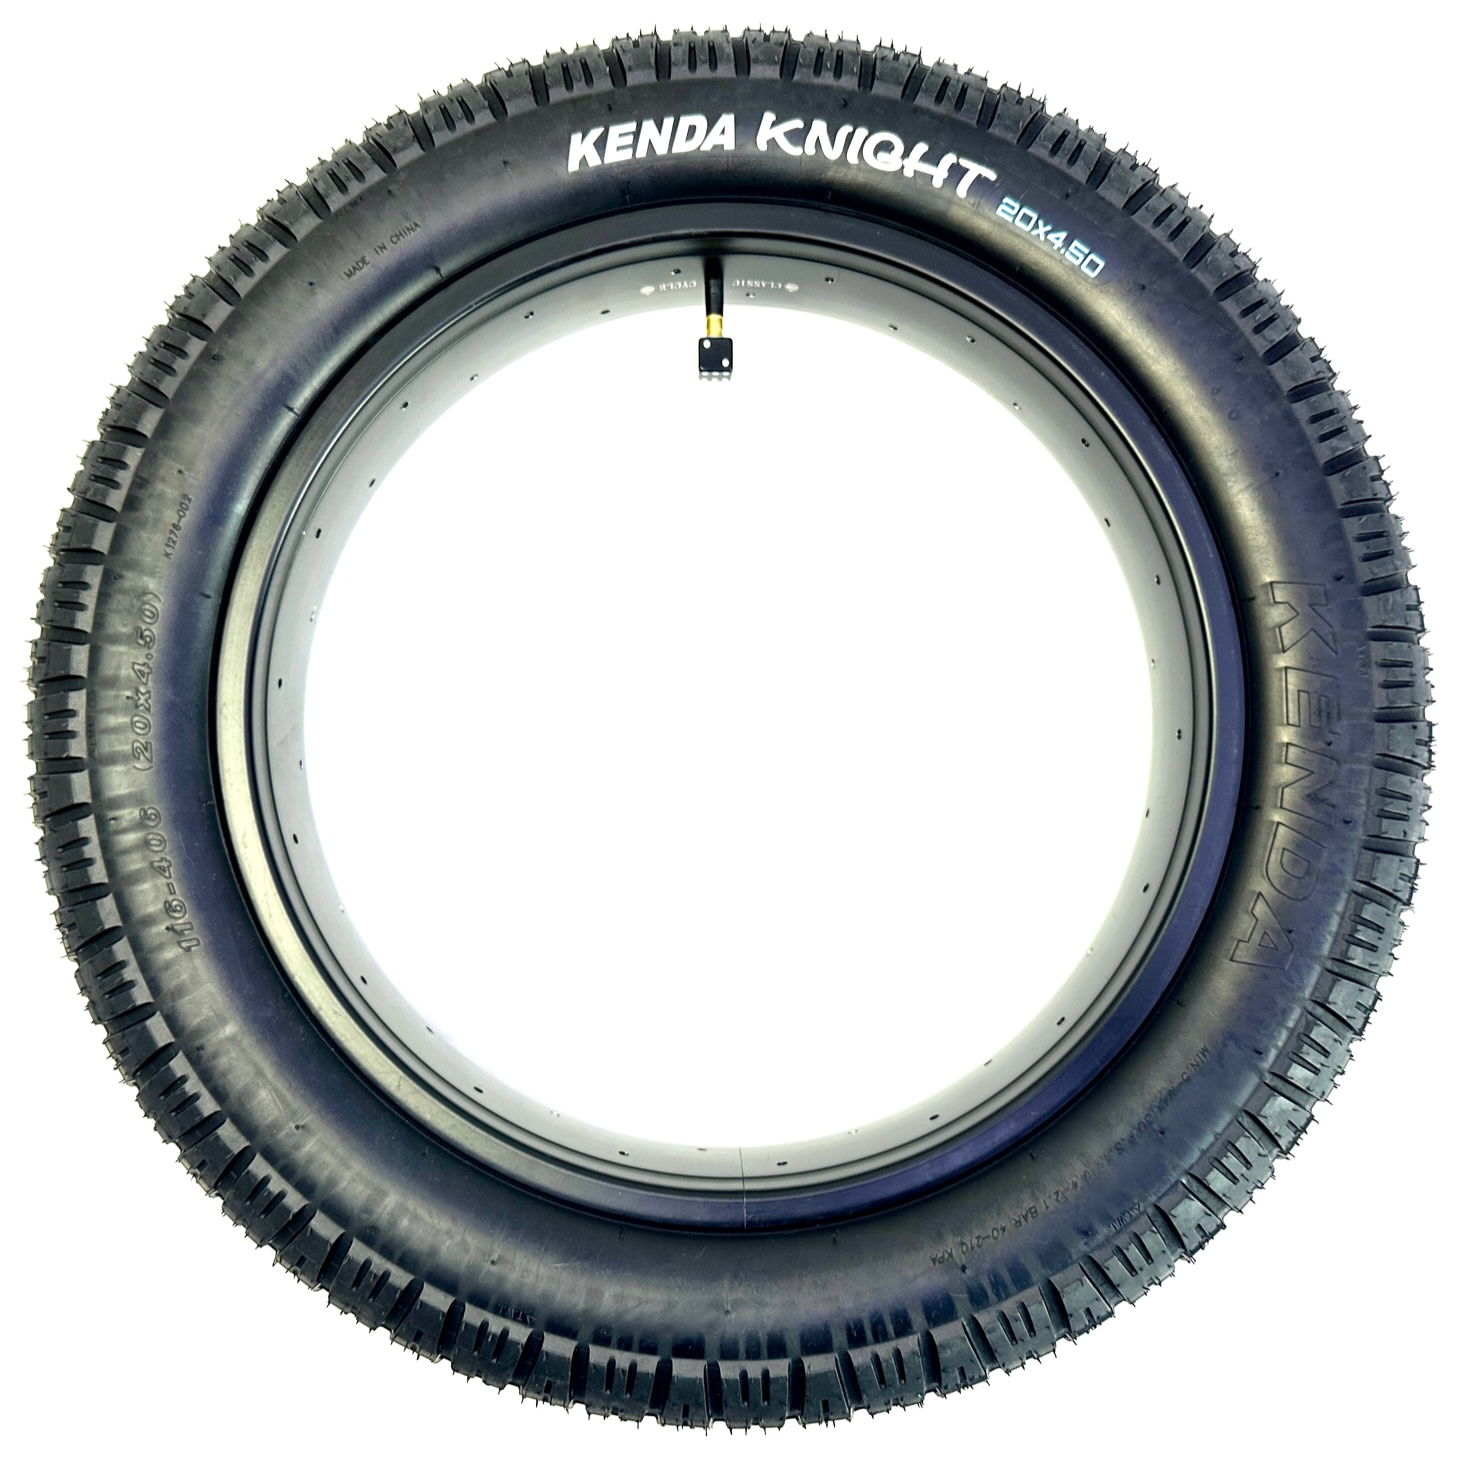 Kenda Knight tire 20 x 4.5 pure black